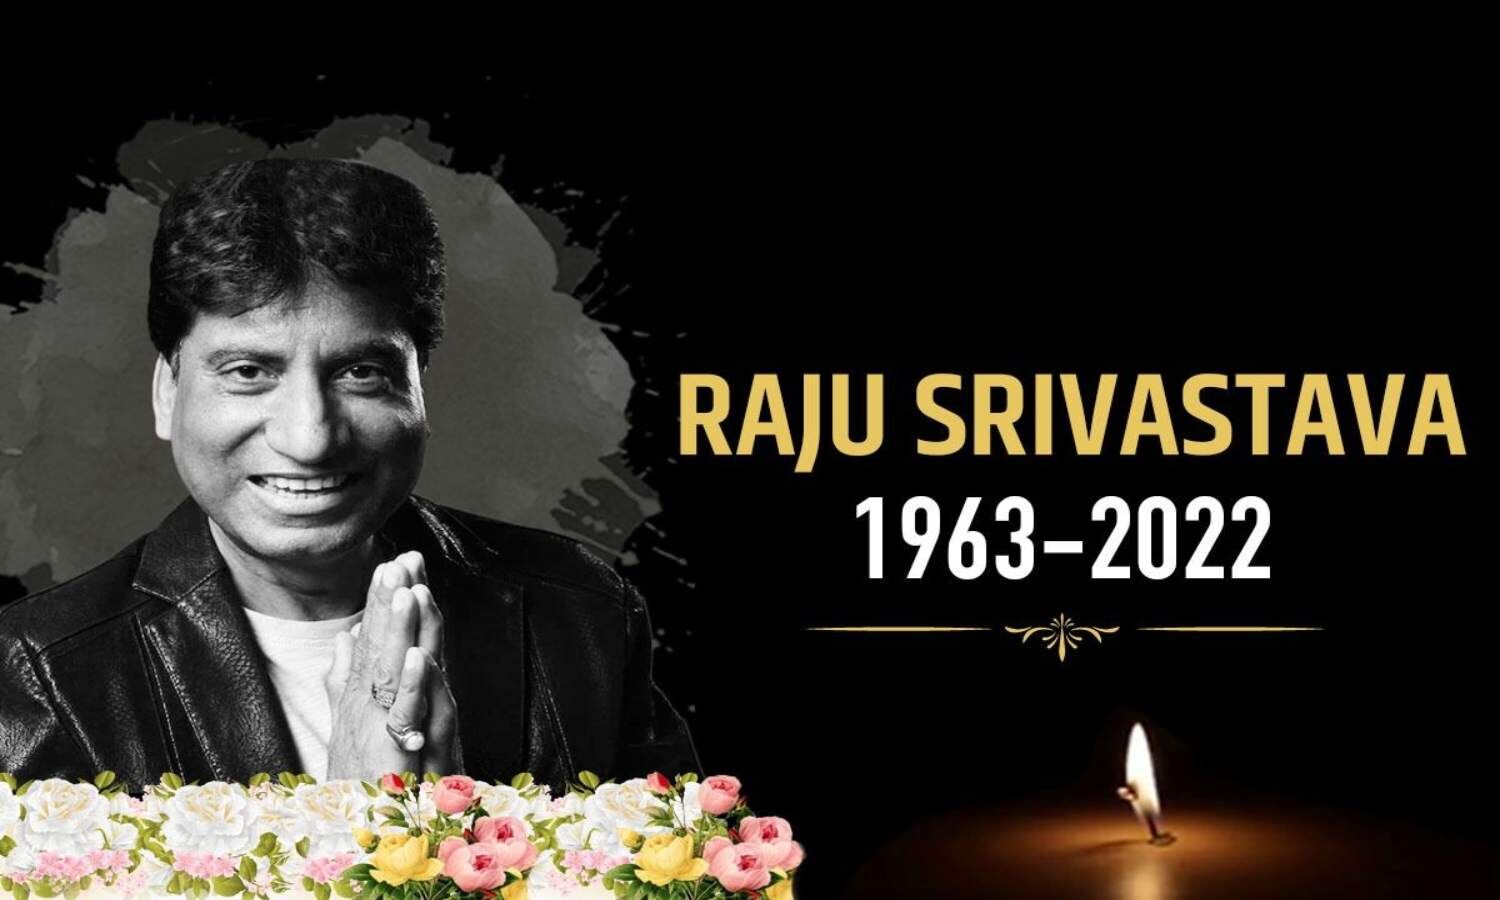 Raju Srivastava death: Watch some memorable videos of Raju Srivastava